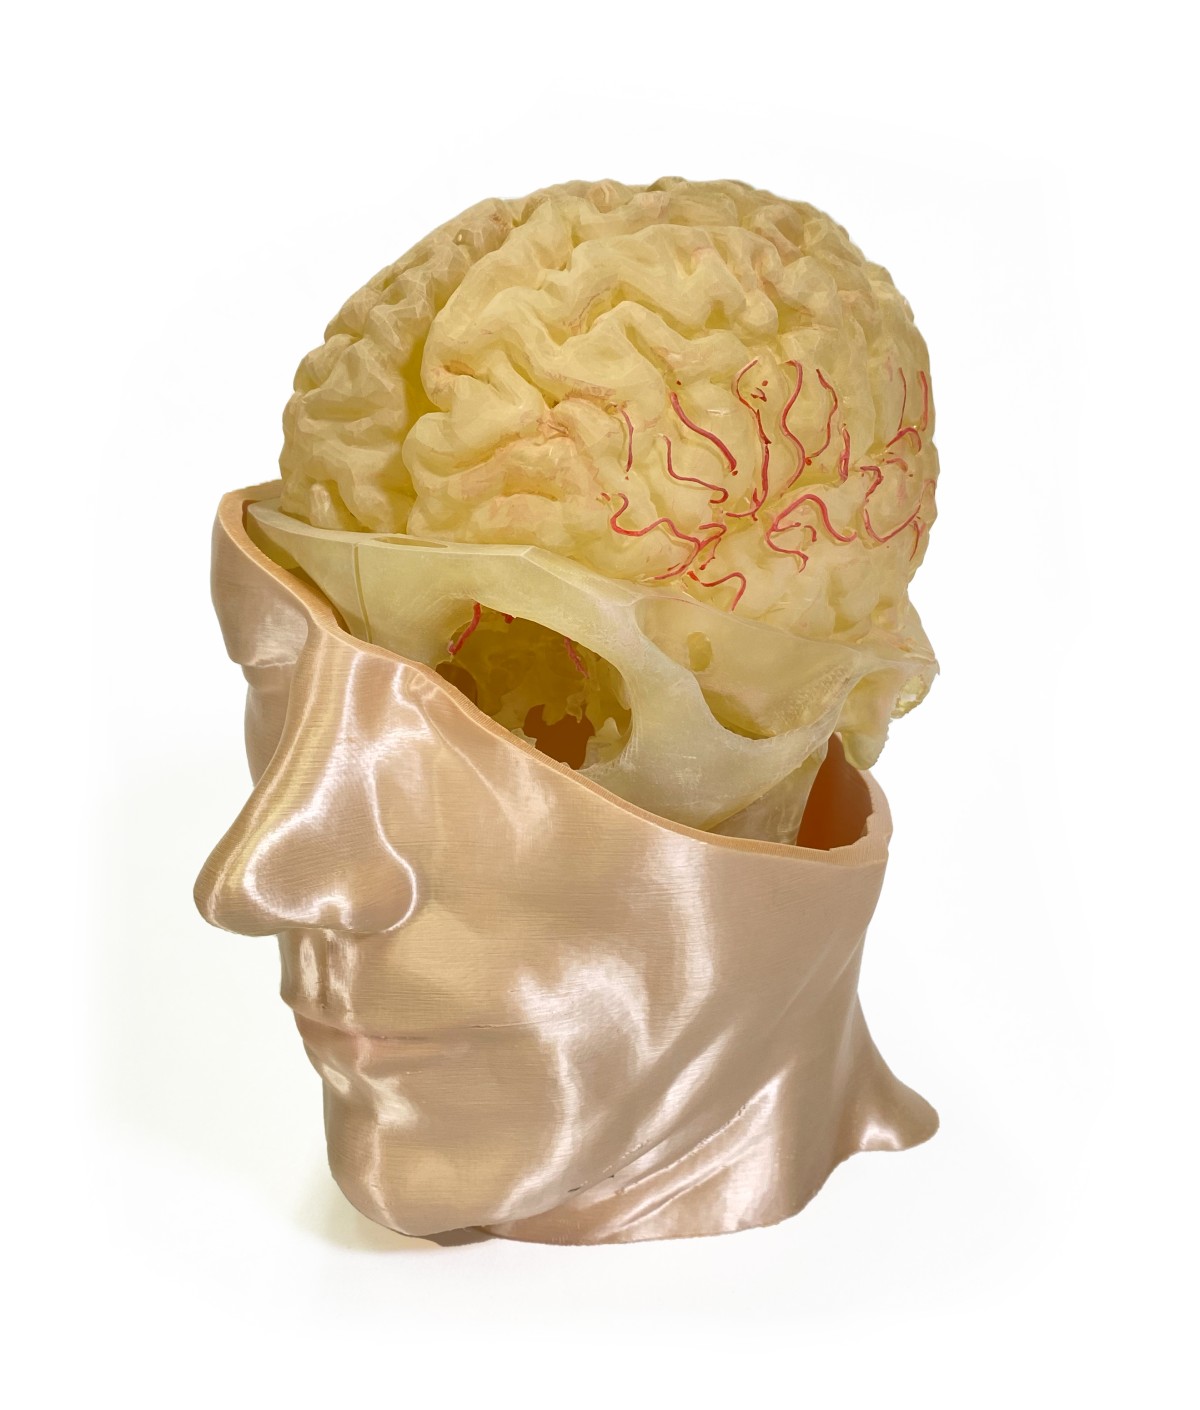 Schnittmodell eines menschlichen Kopfes mit sichtbarem Schädel, Gehirn und rot eingefärbten Blutgefäßen